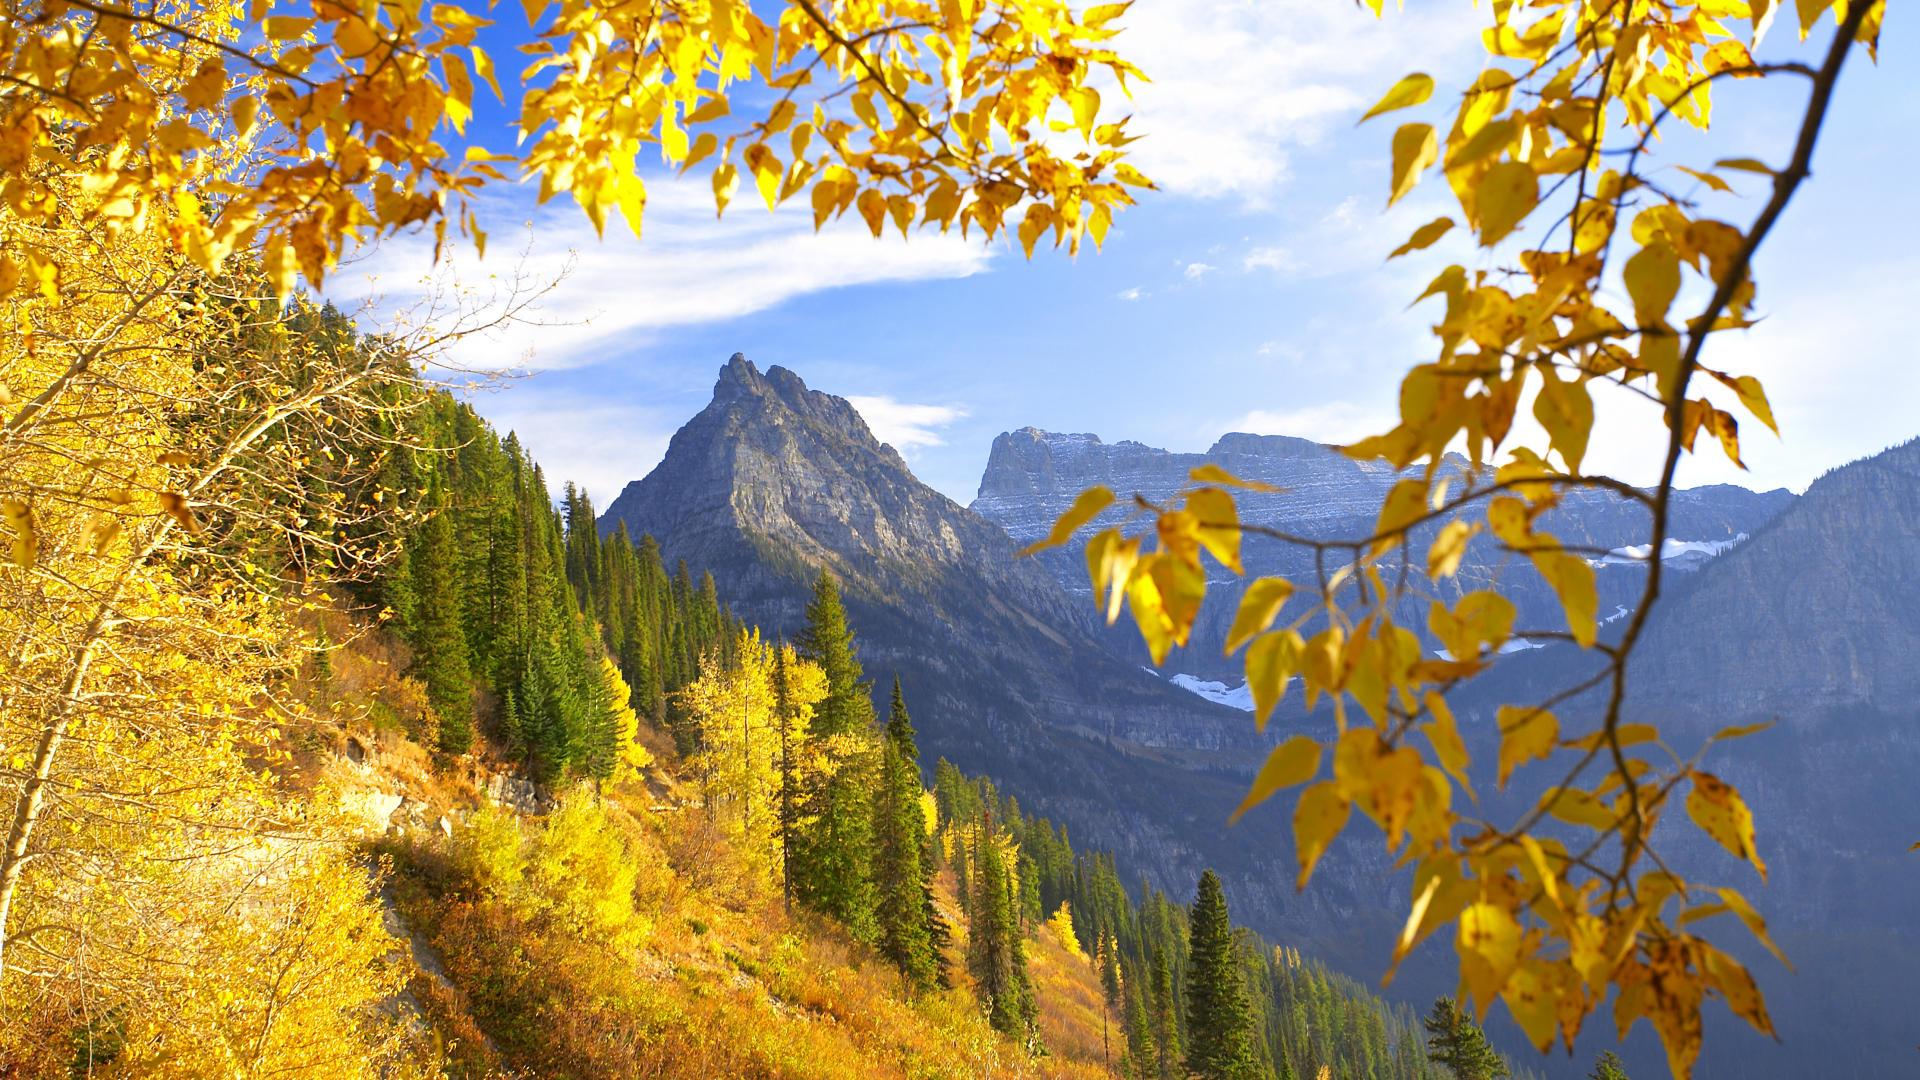 Монтана, горы, осень обои для рабочего стола, картинки, фото, 1920x1080.